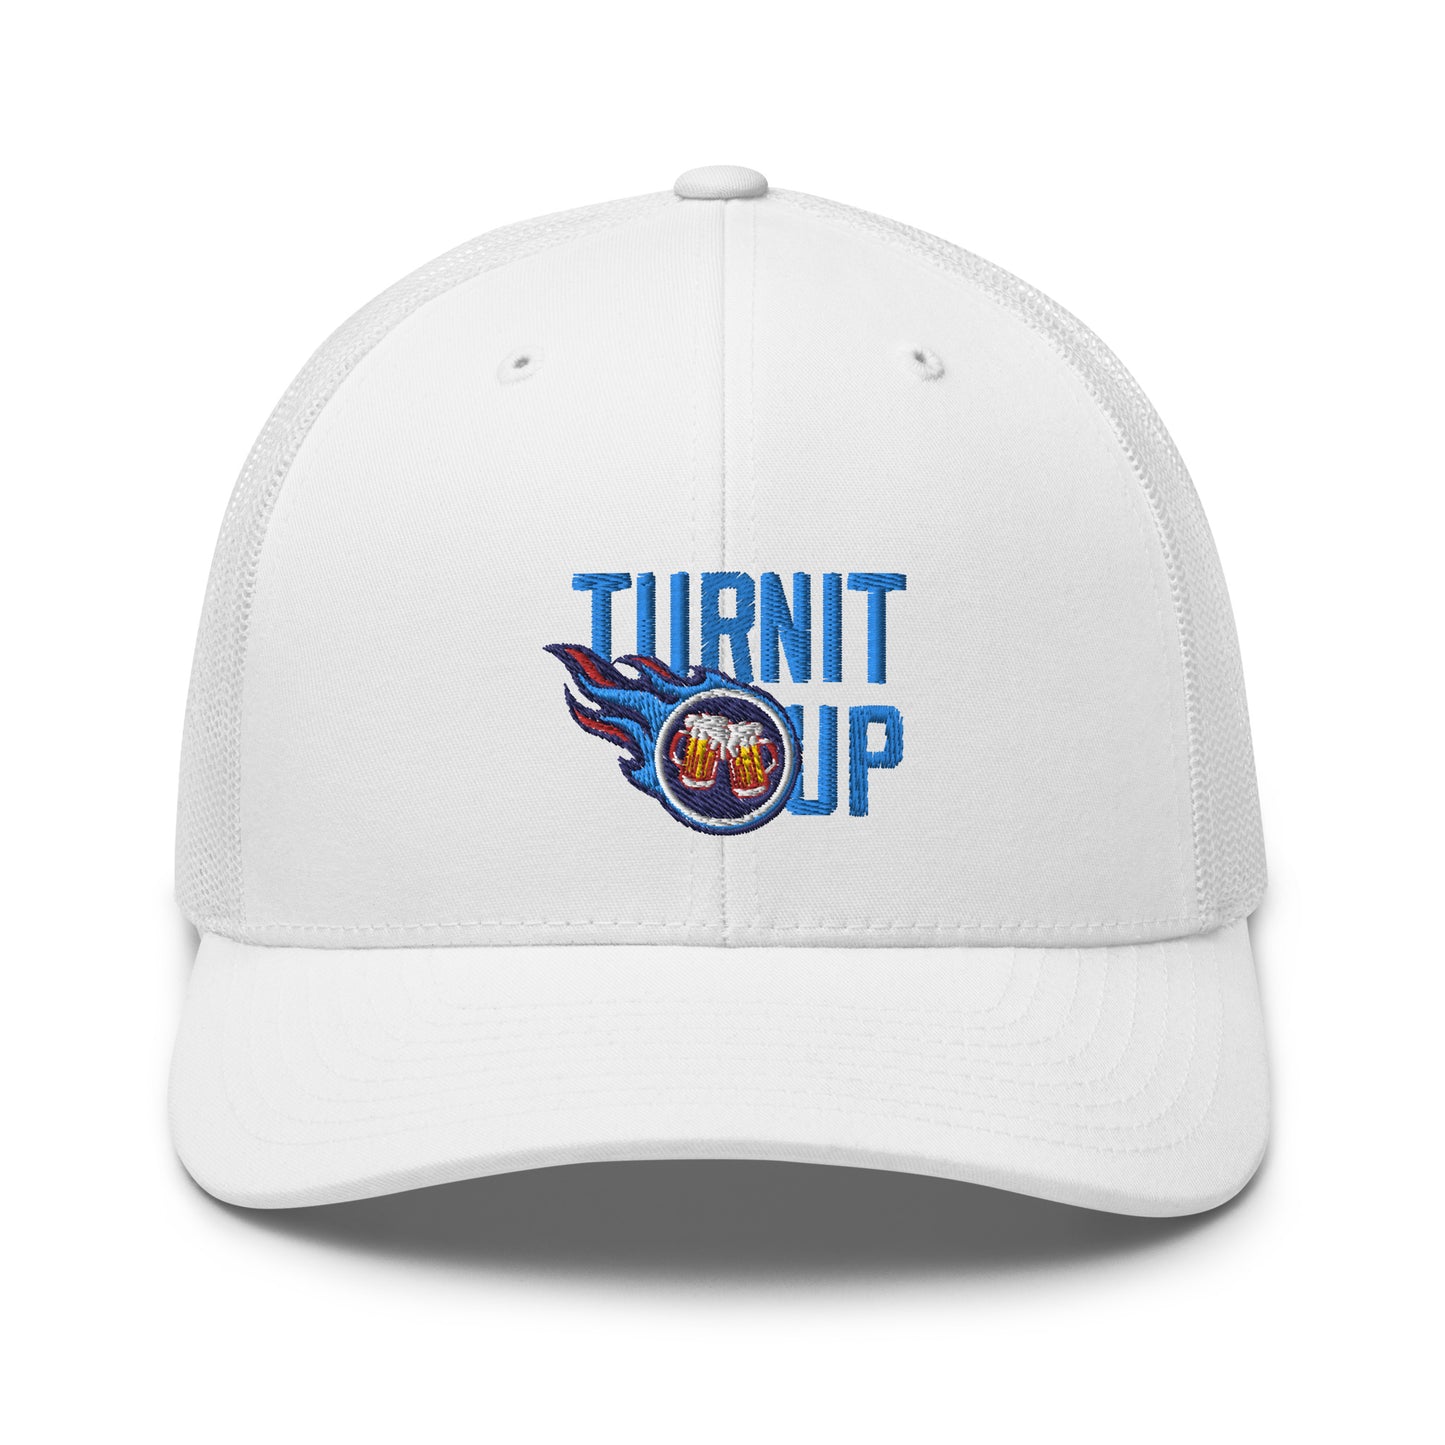 Turn It Up Trucker Cap